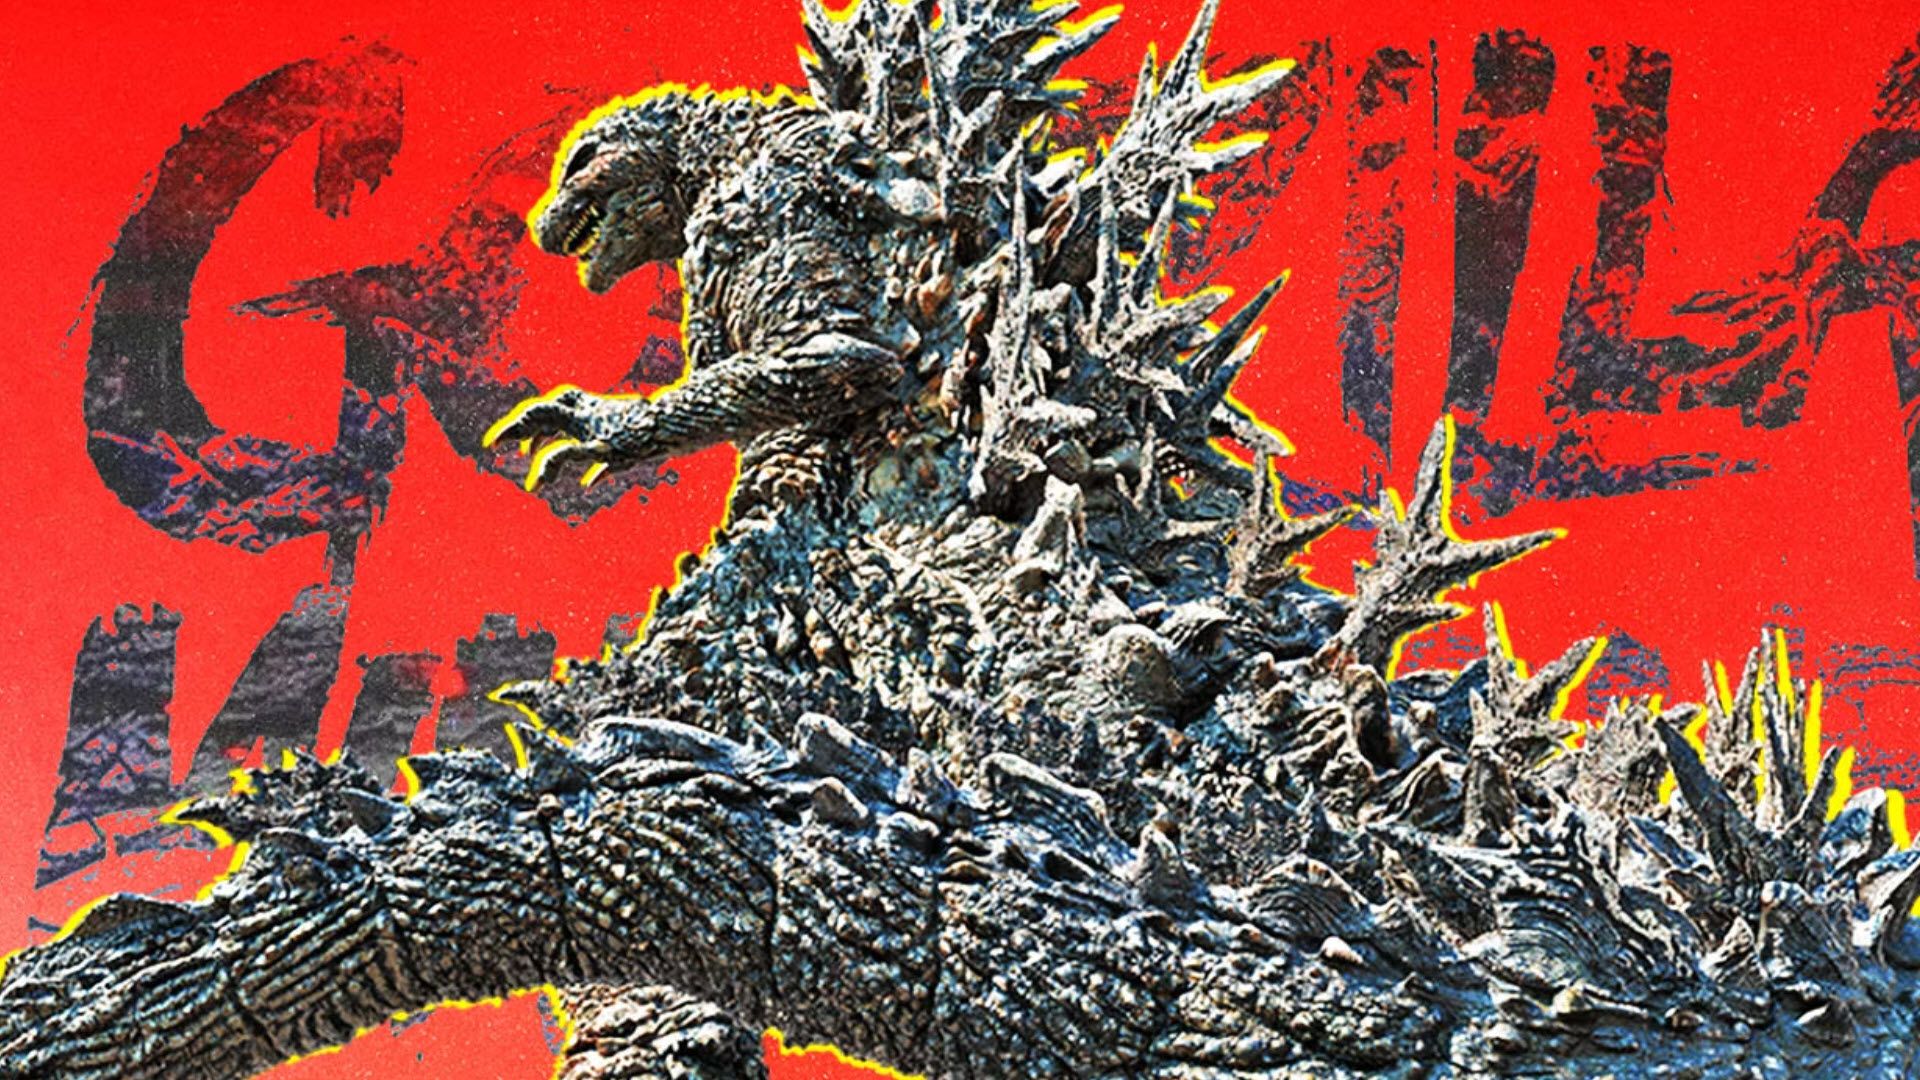 KCIUK Jak Godzilla